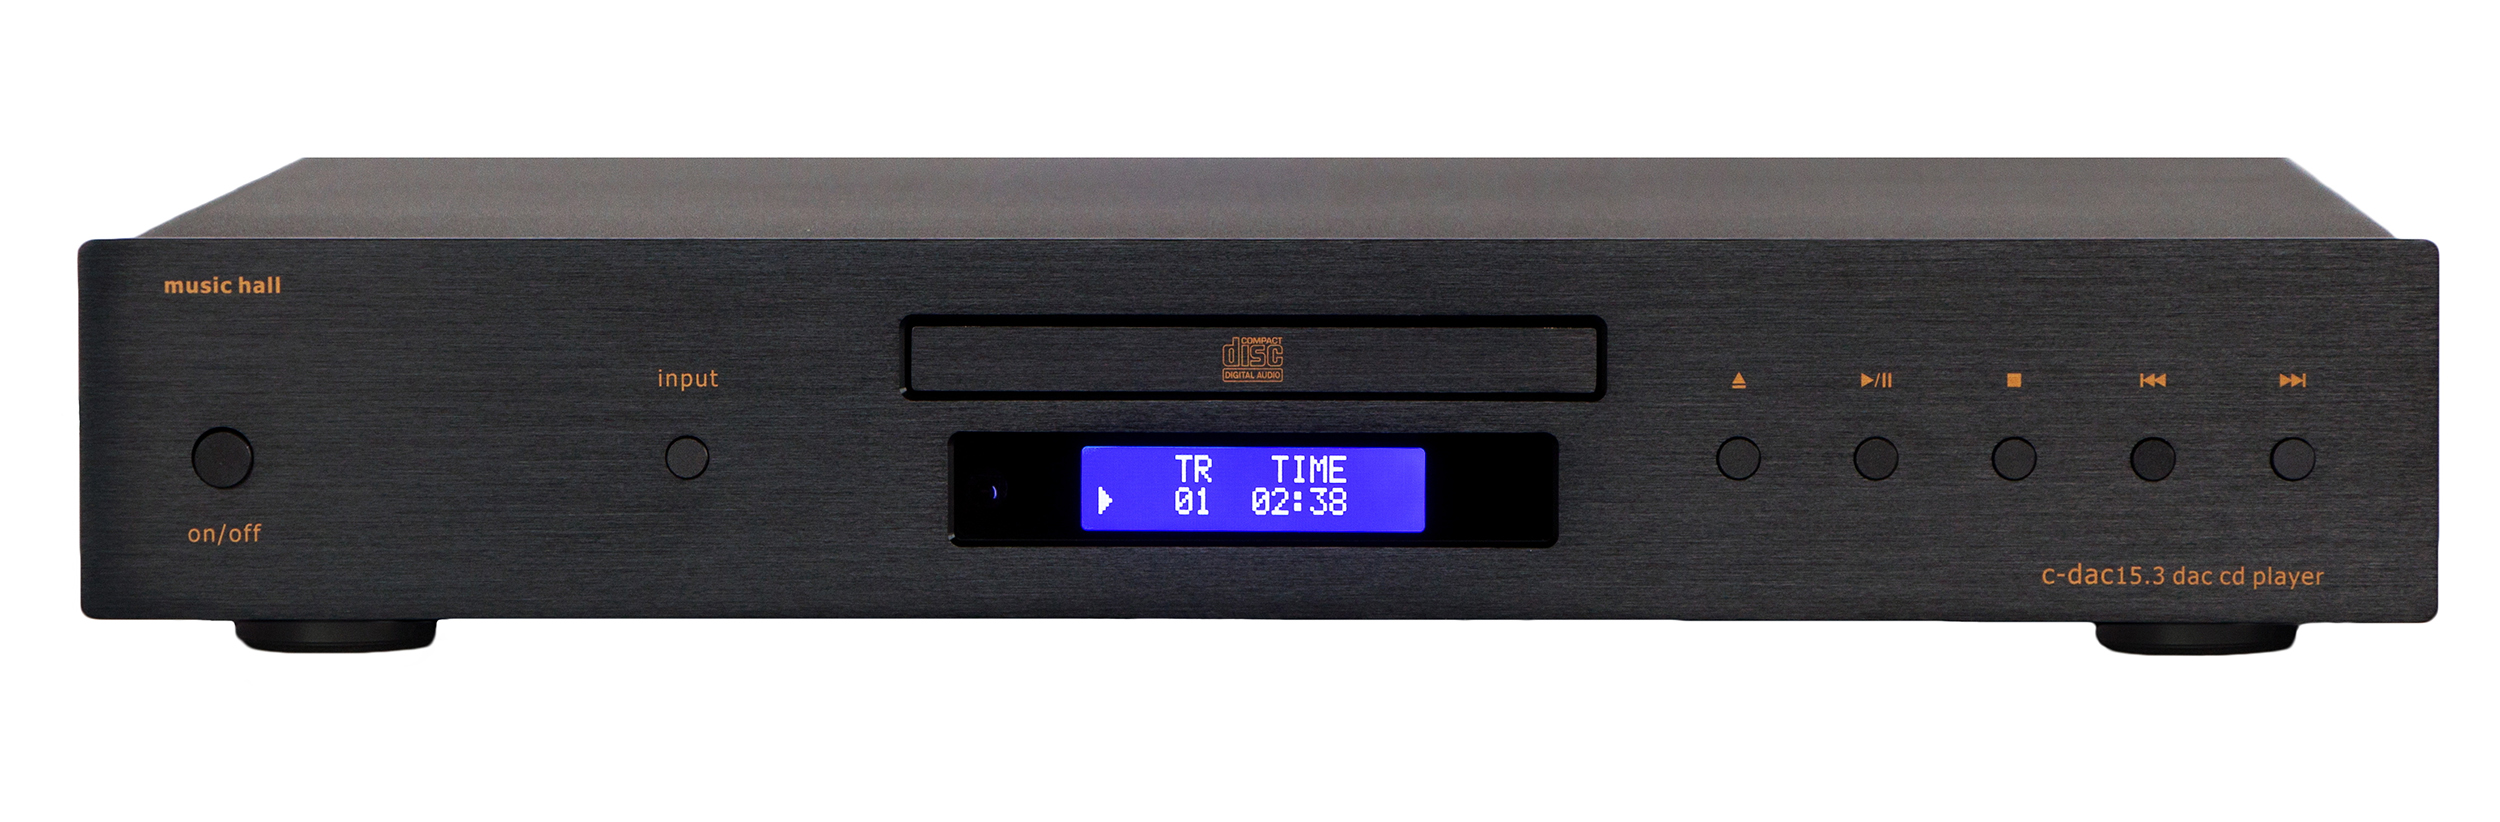 C-DAC15.3, DAC-CD-player, black